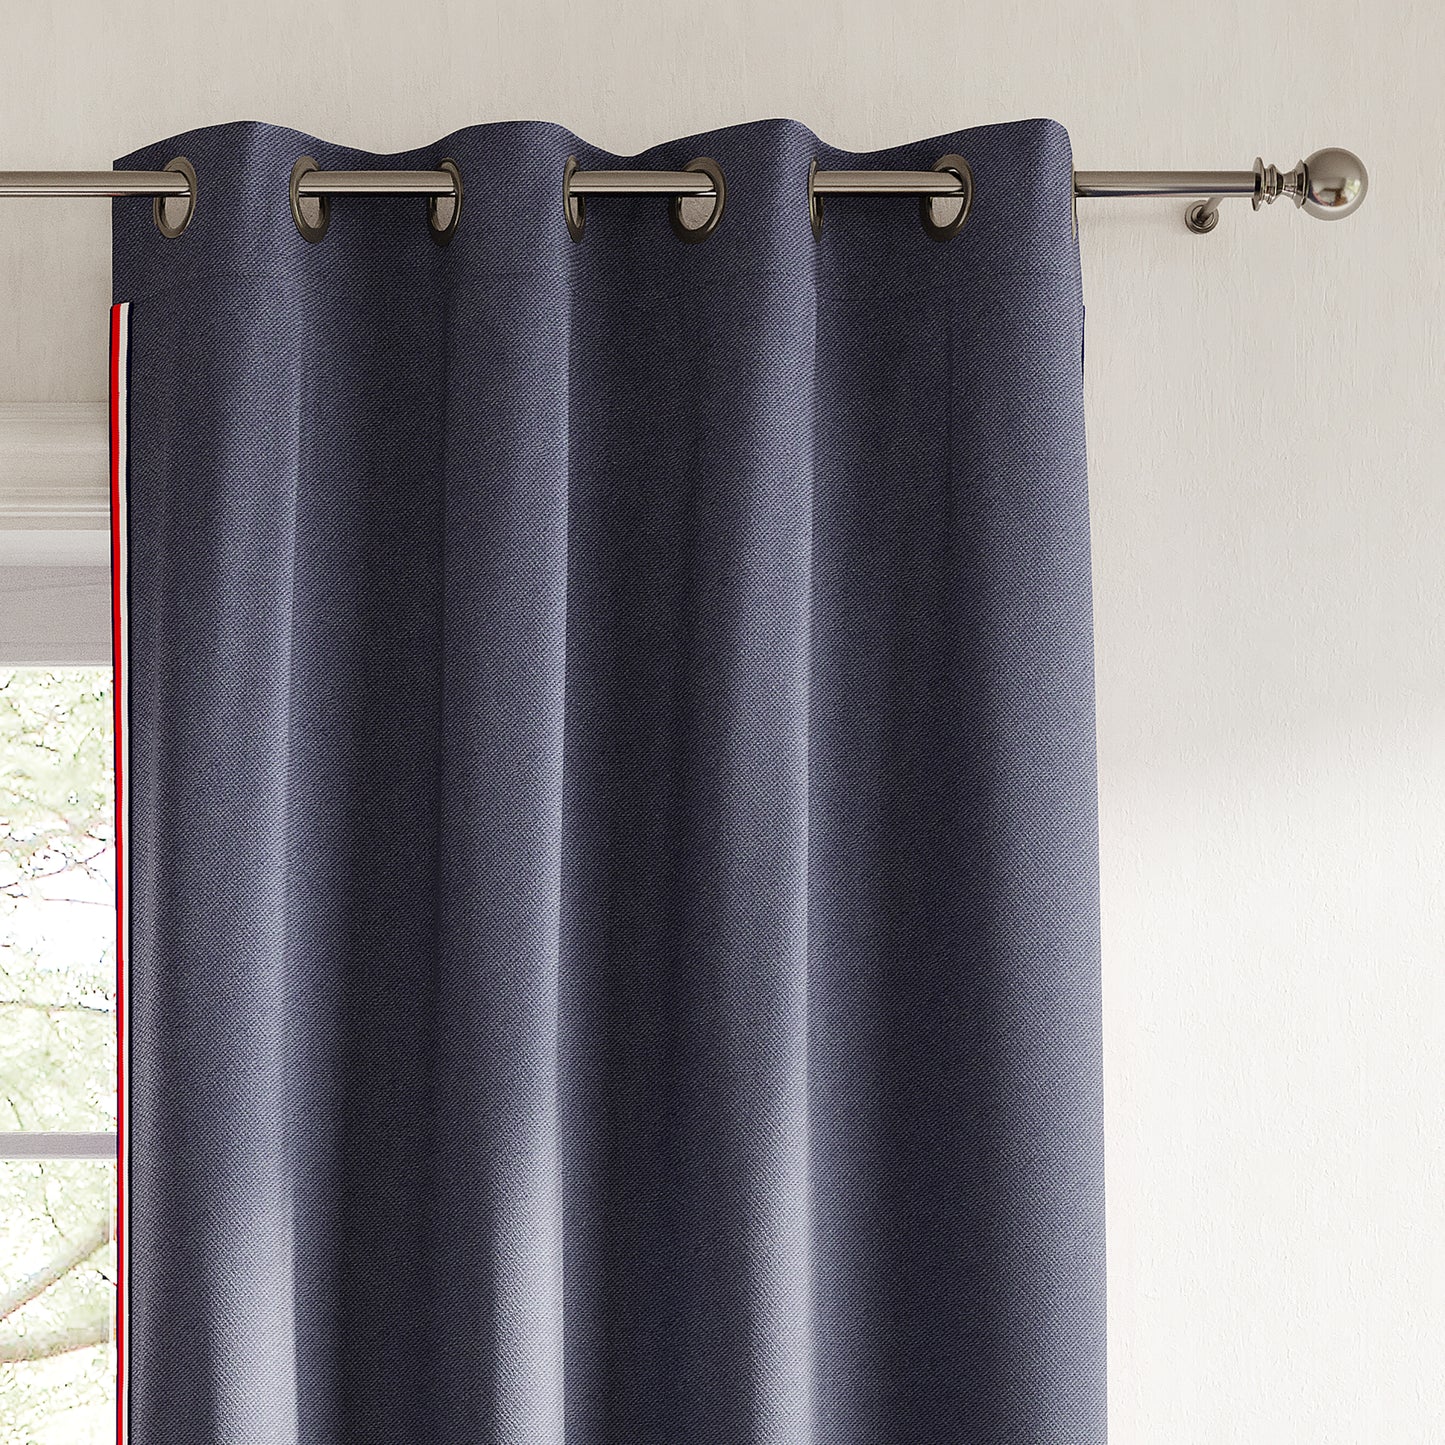 Tommy Hilfiger Hilfiger Stripe Indoor/Outdoor Curtain Panel Pair